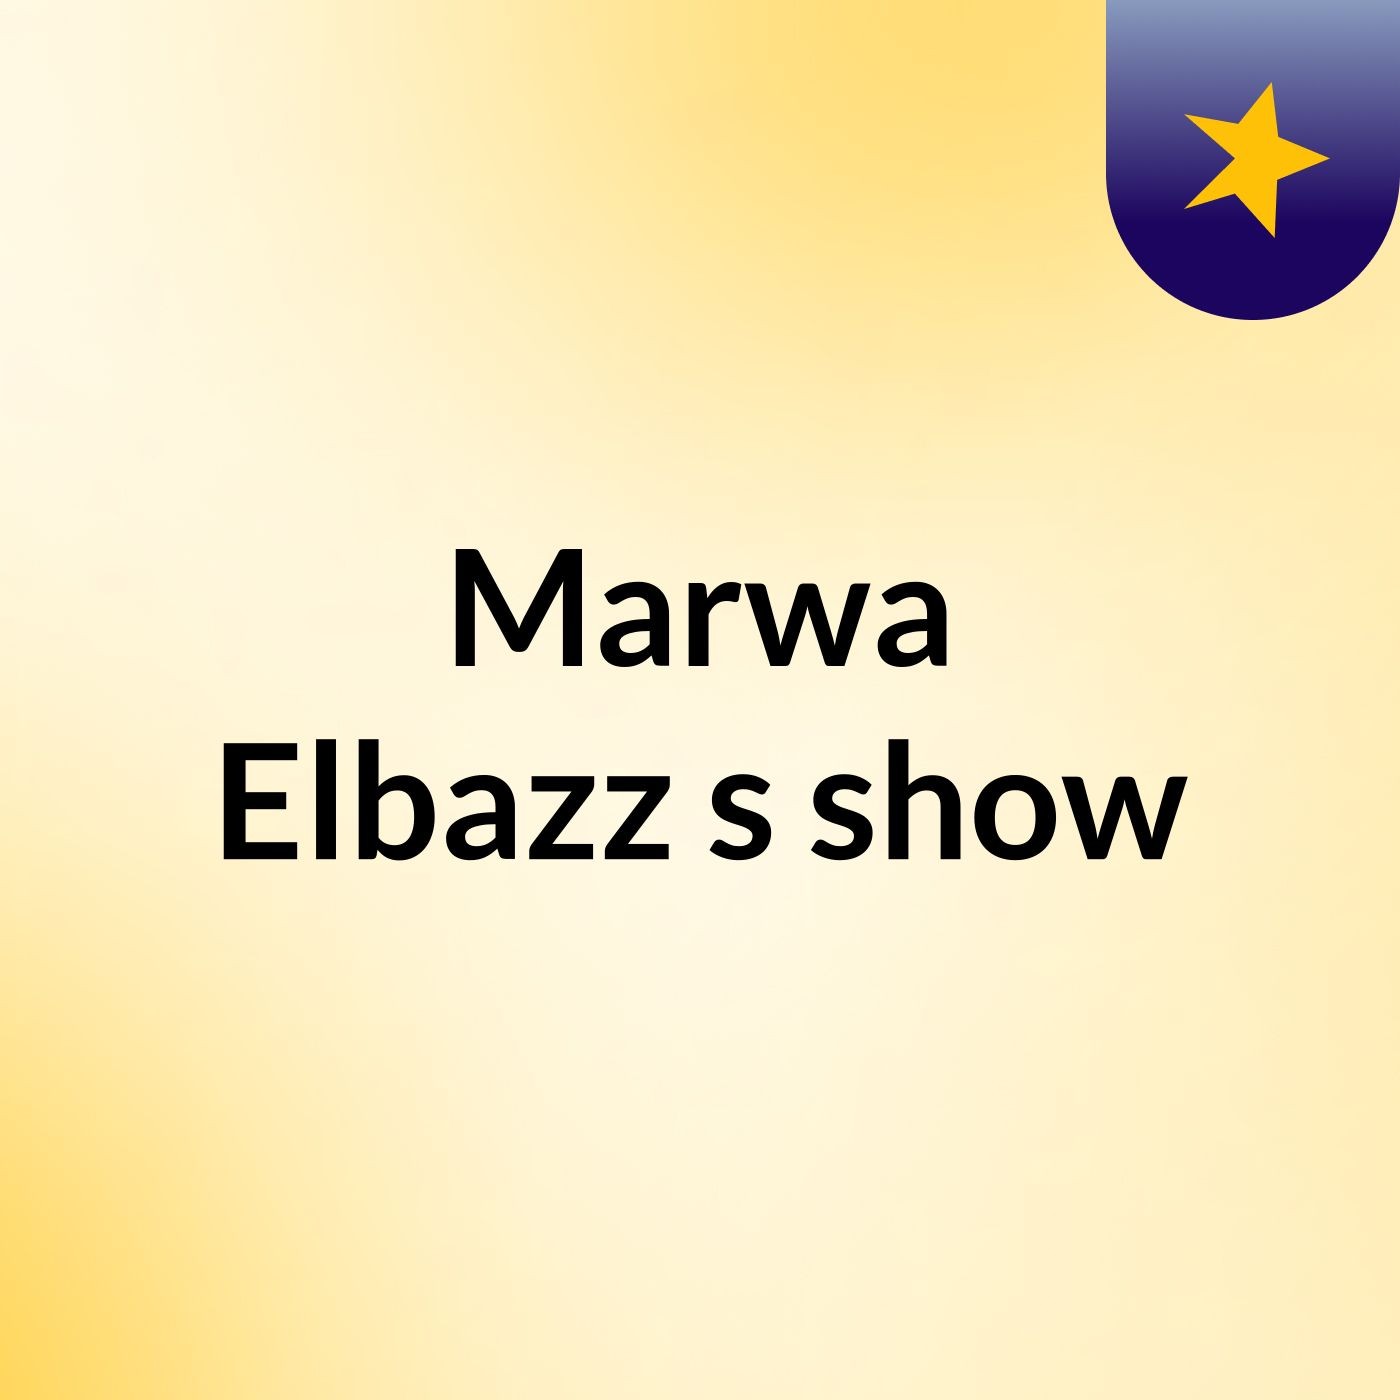 Marwa Elbazz's show